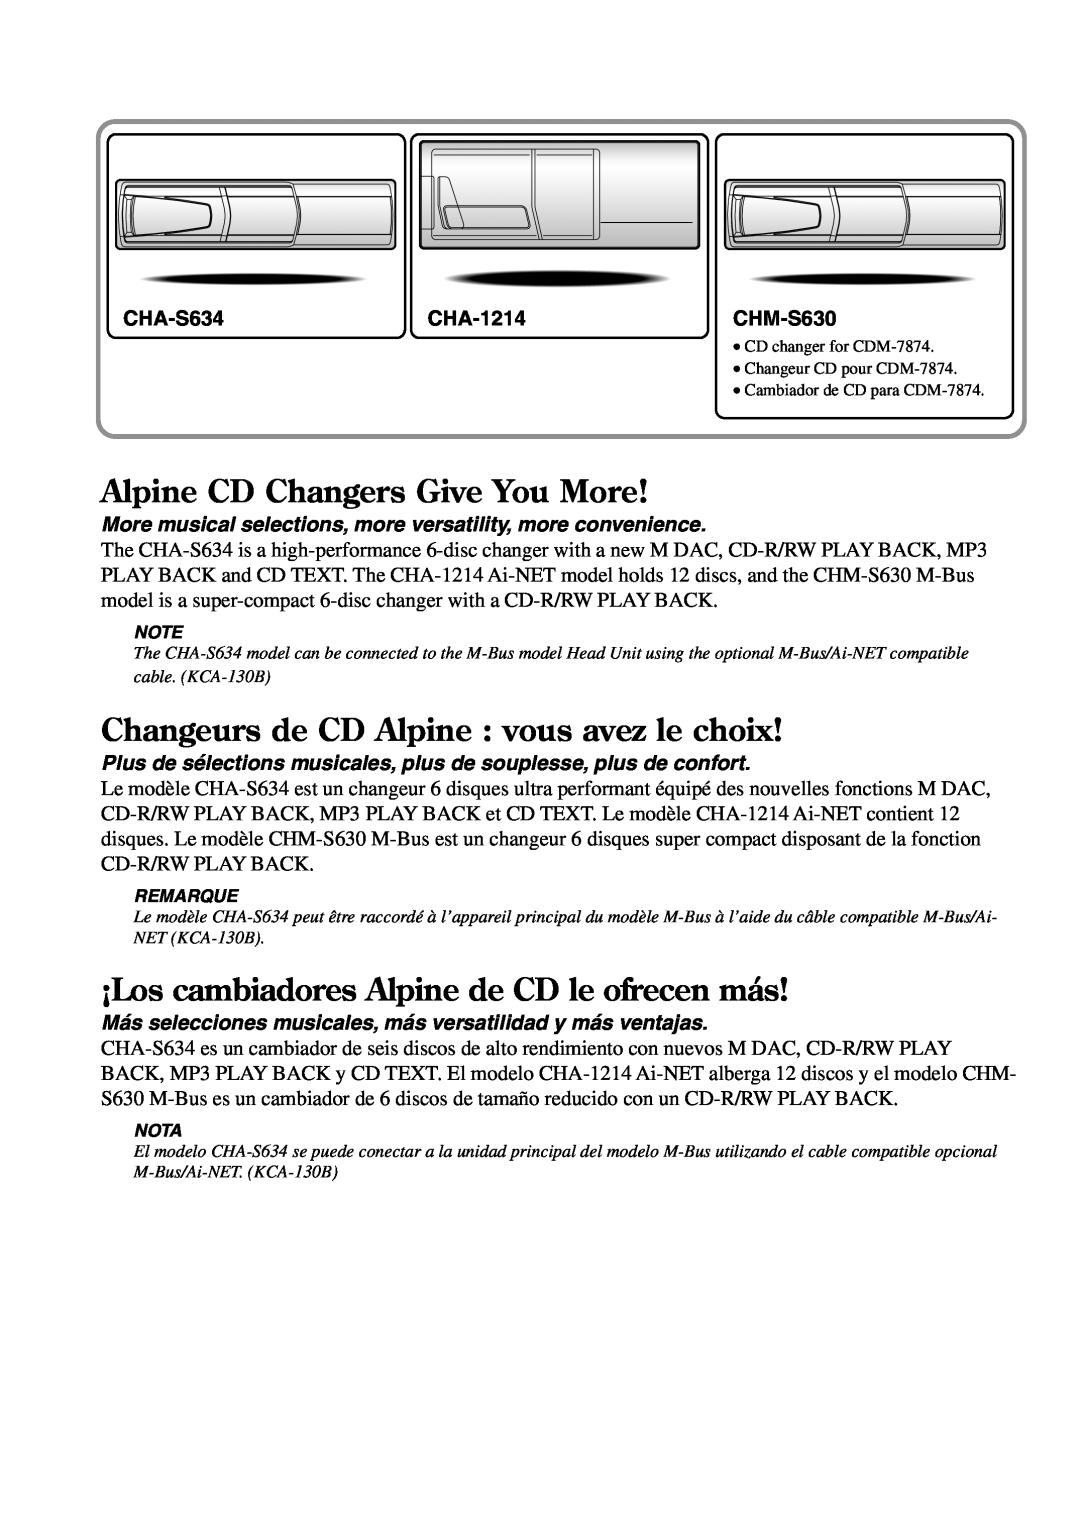 Alpine CDE-7872 Alpine CD Changers Give You More, Changeurs de CD Alpine vous avez le choix, CHA-S634CHA-1214CHM-S630 